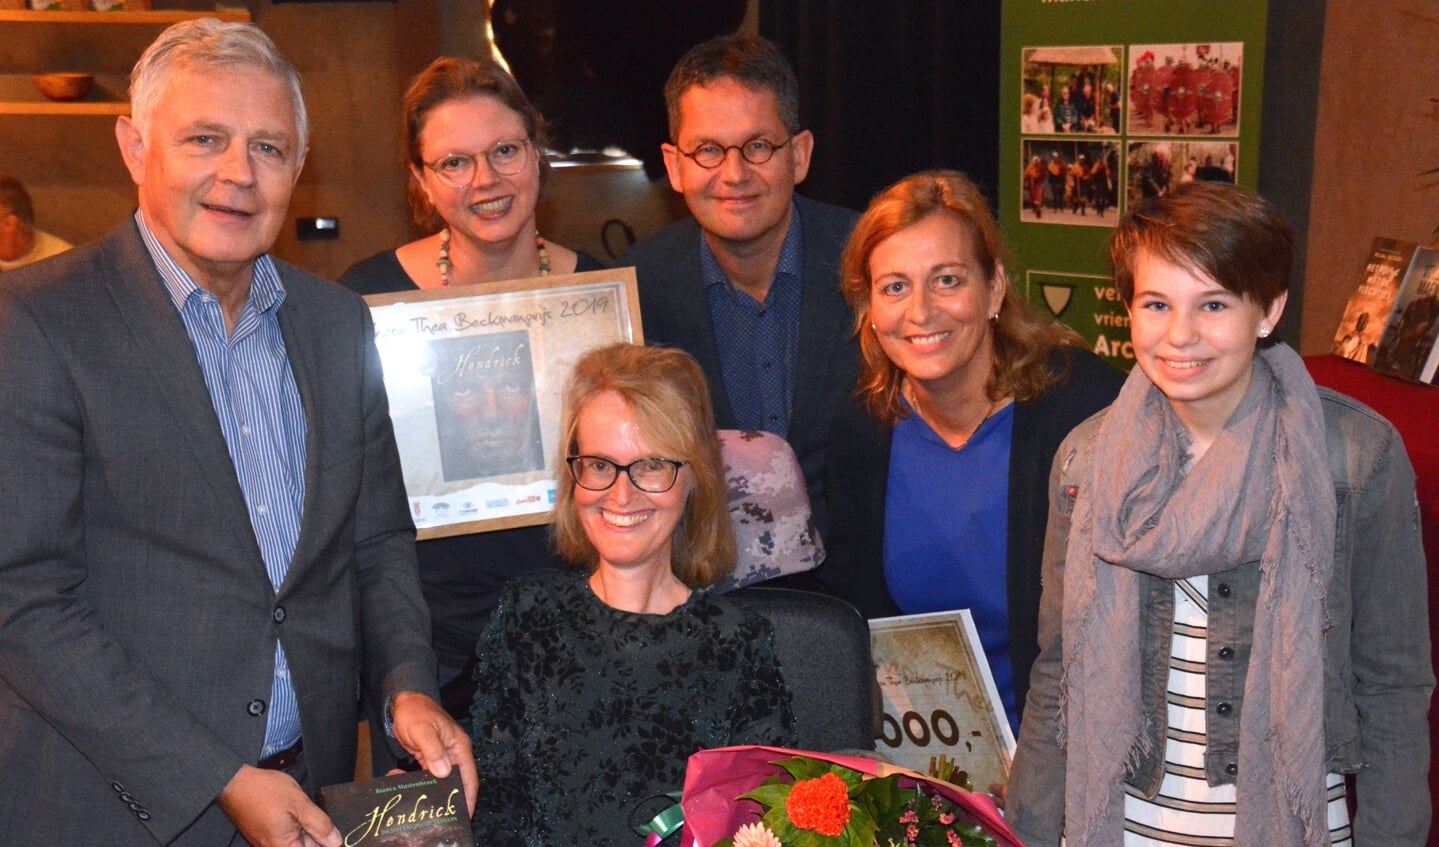 Archeon Thea Beckmanprijs en Jonge Beckmanprijs winnaar 2019 Bianca Mastenbroek met haar boek.